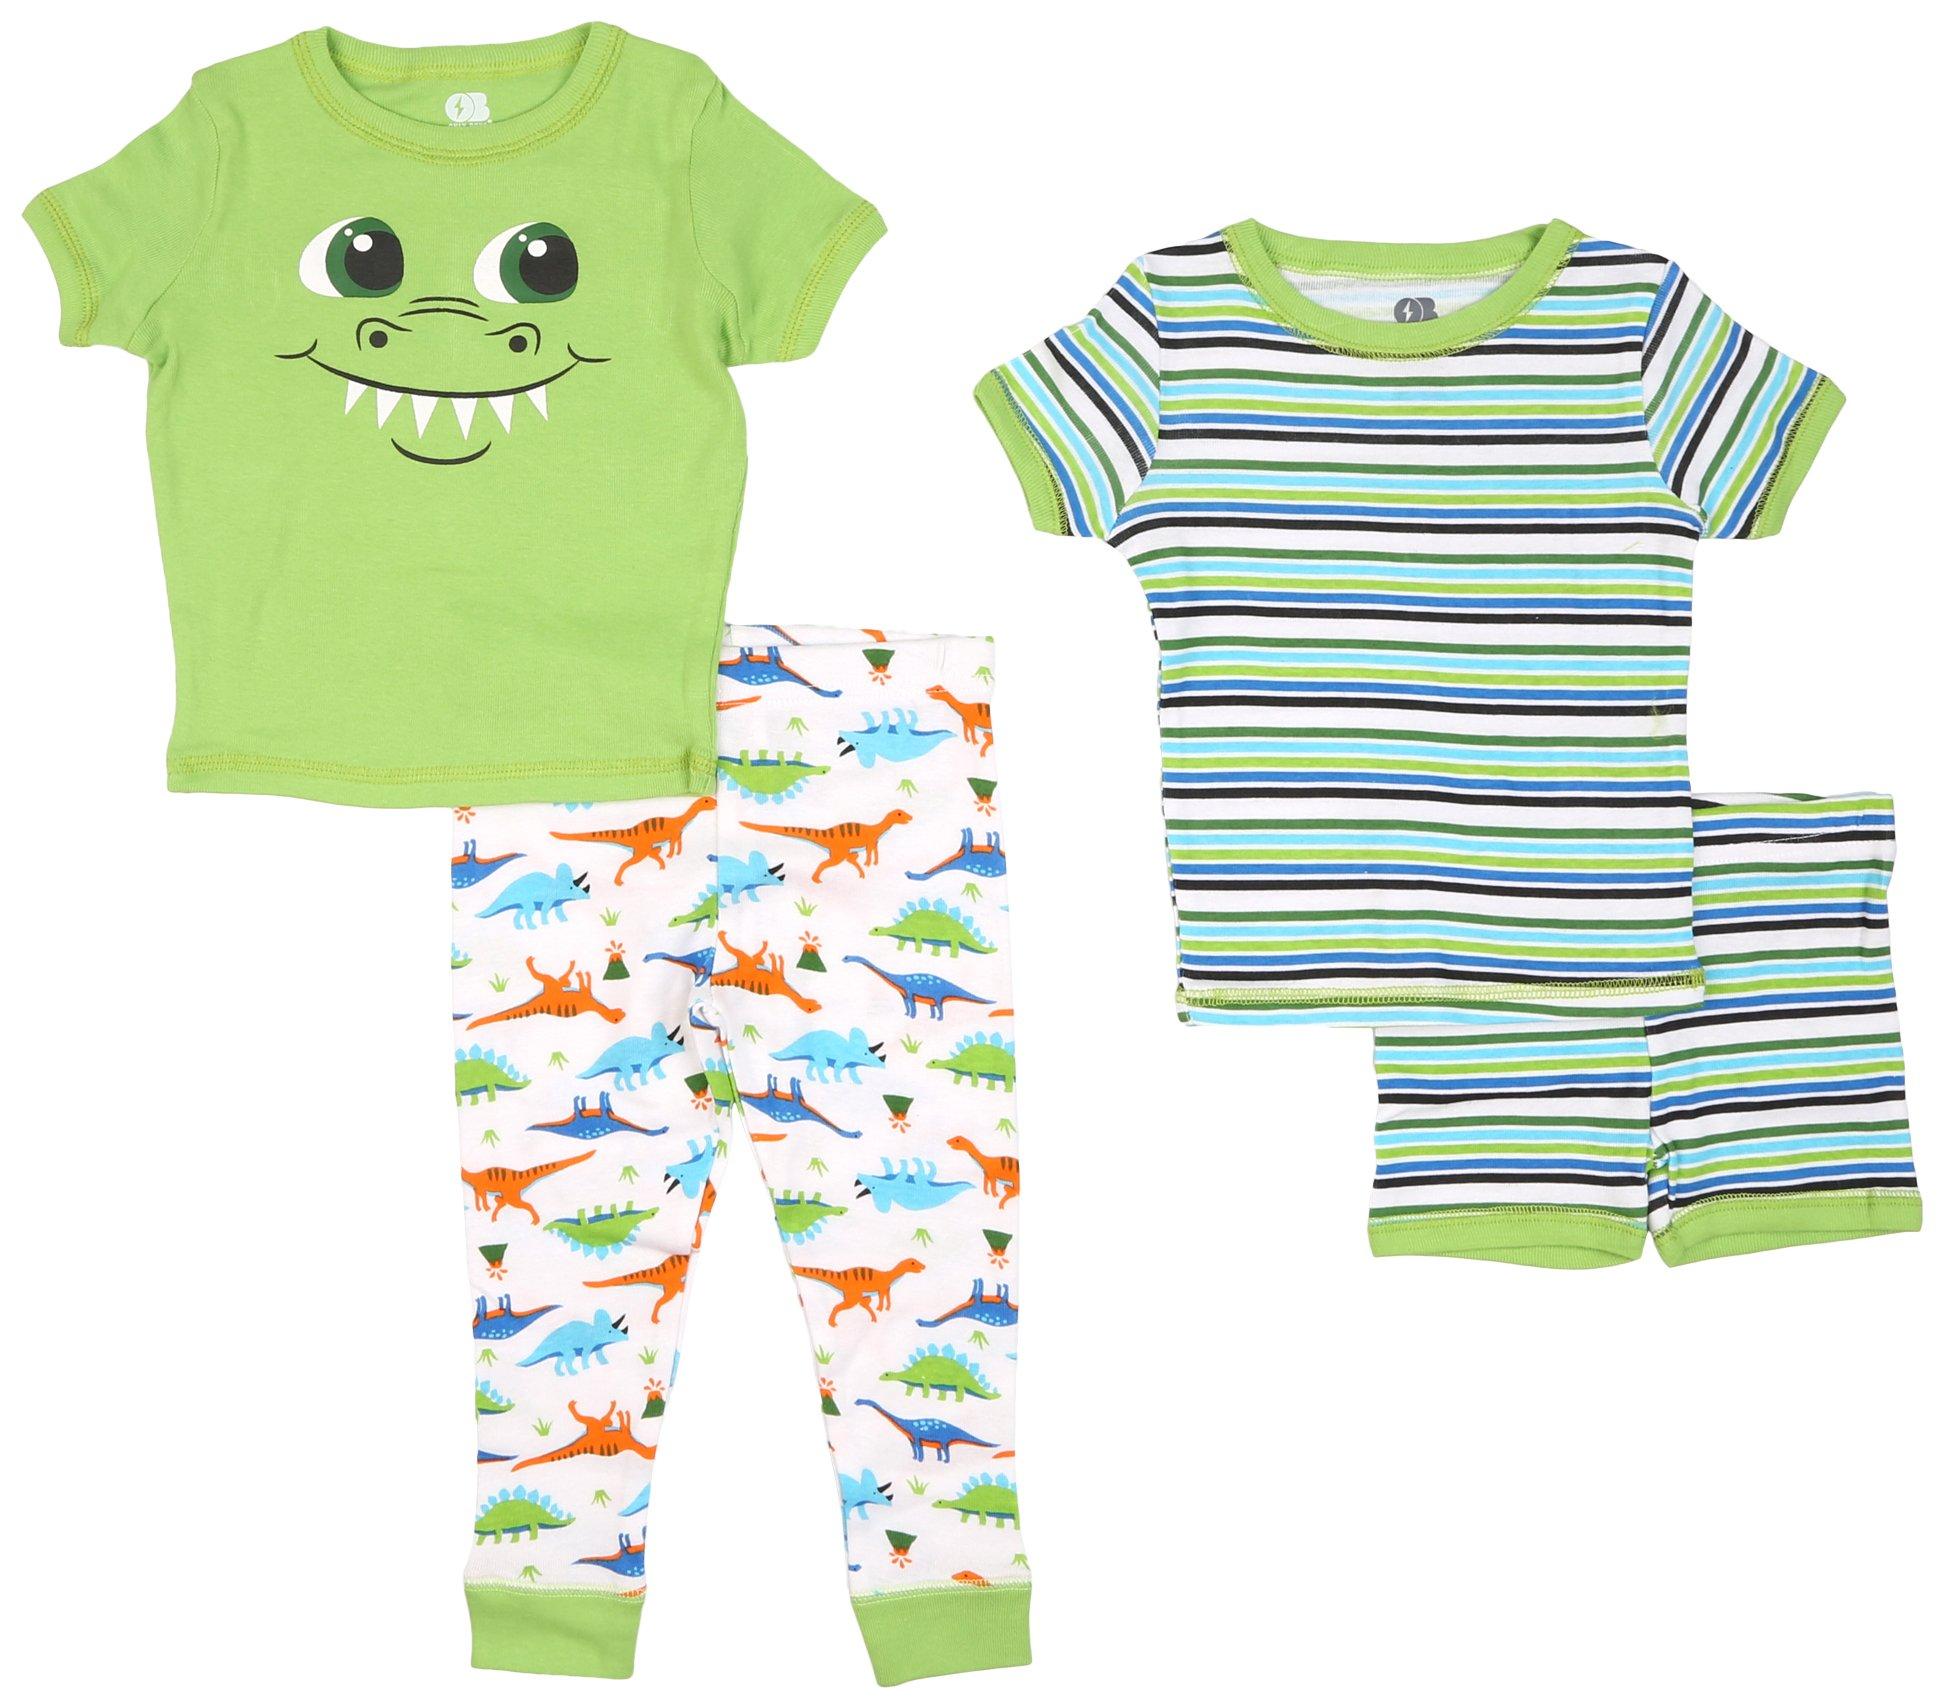 Baby Boys 4-pc. Stripe Dino Graphic Pajama Set